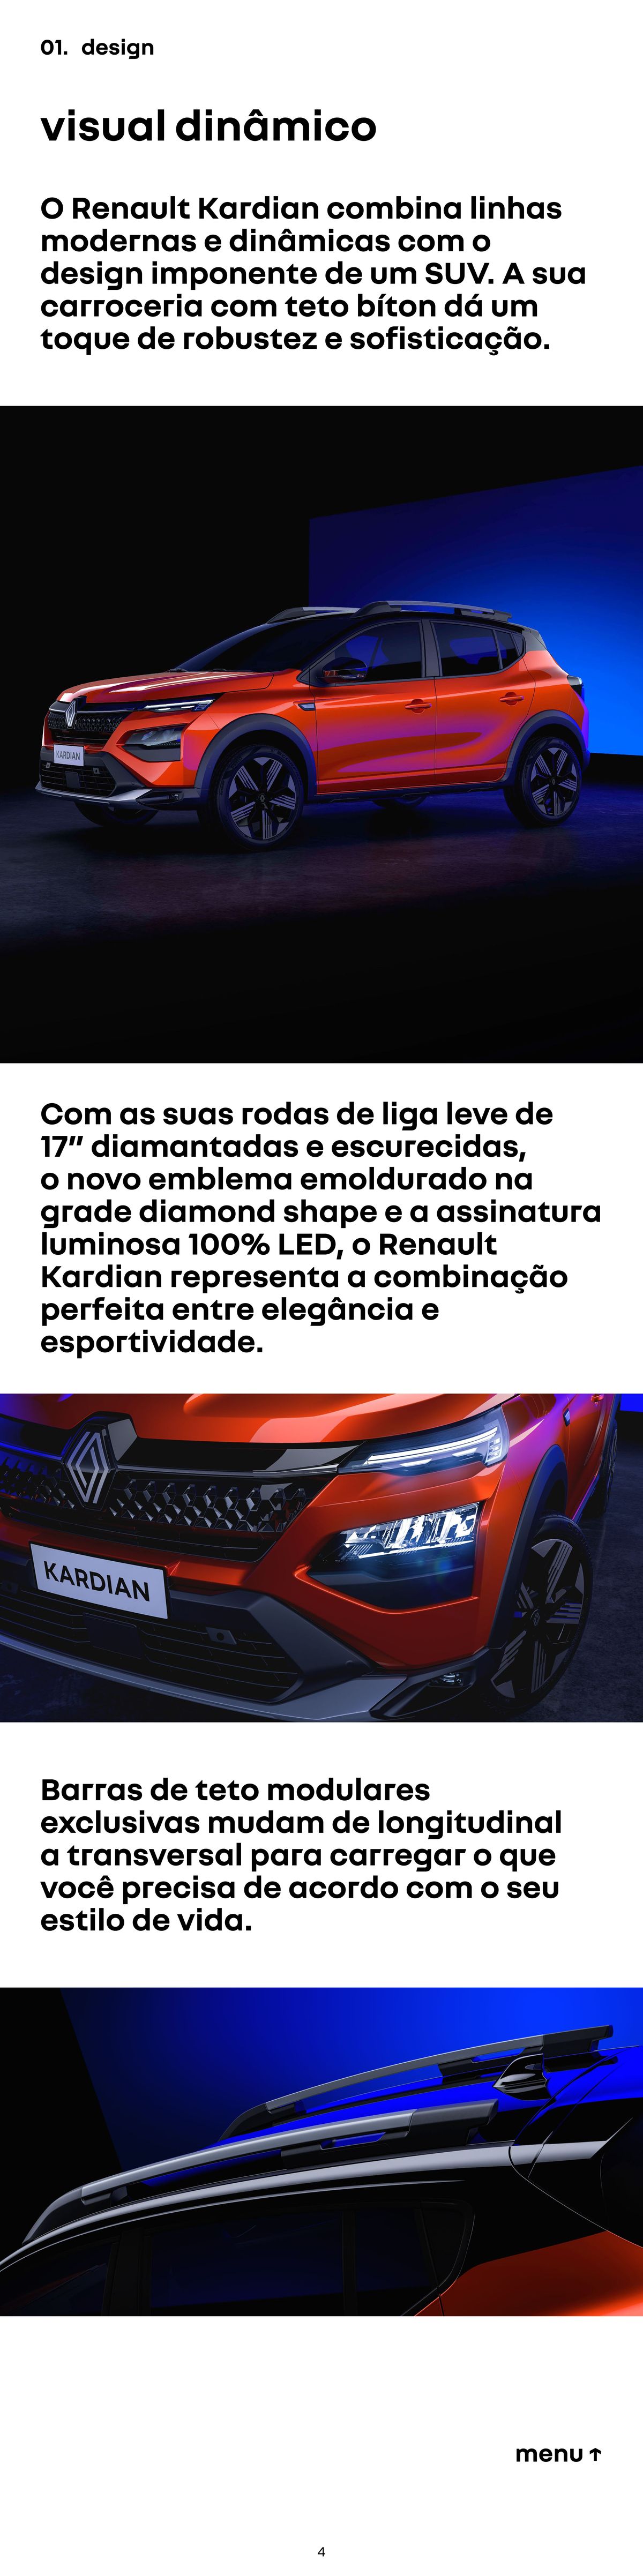 Renault Kardian - Design Moderno e Sofisticado